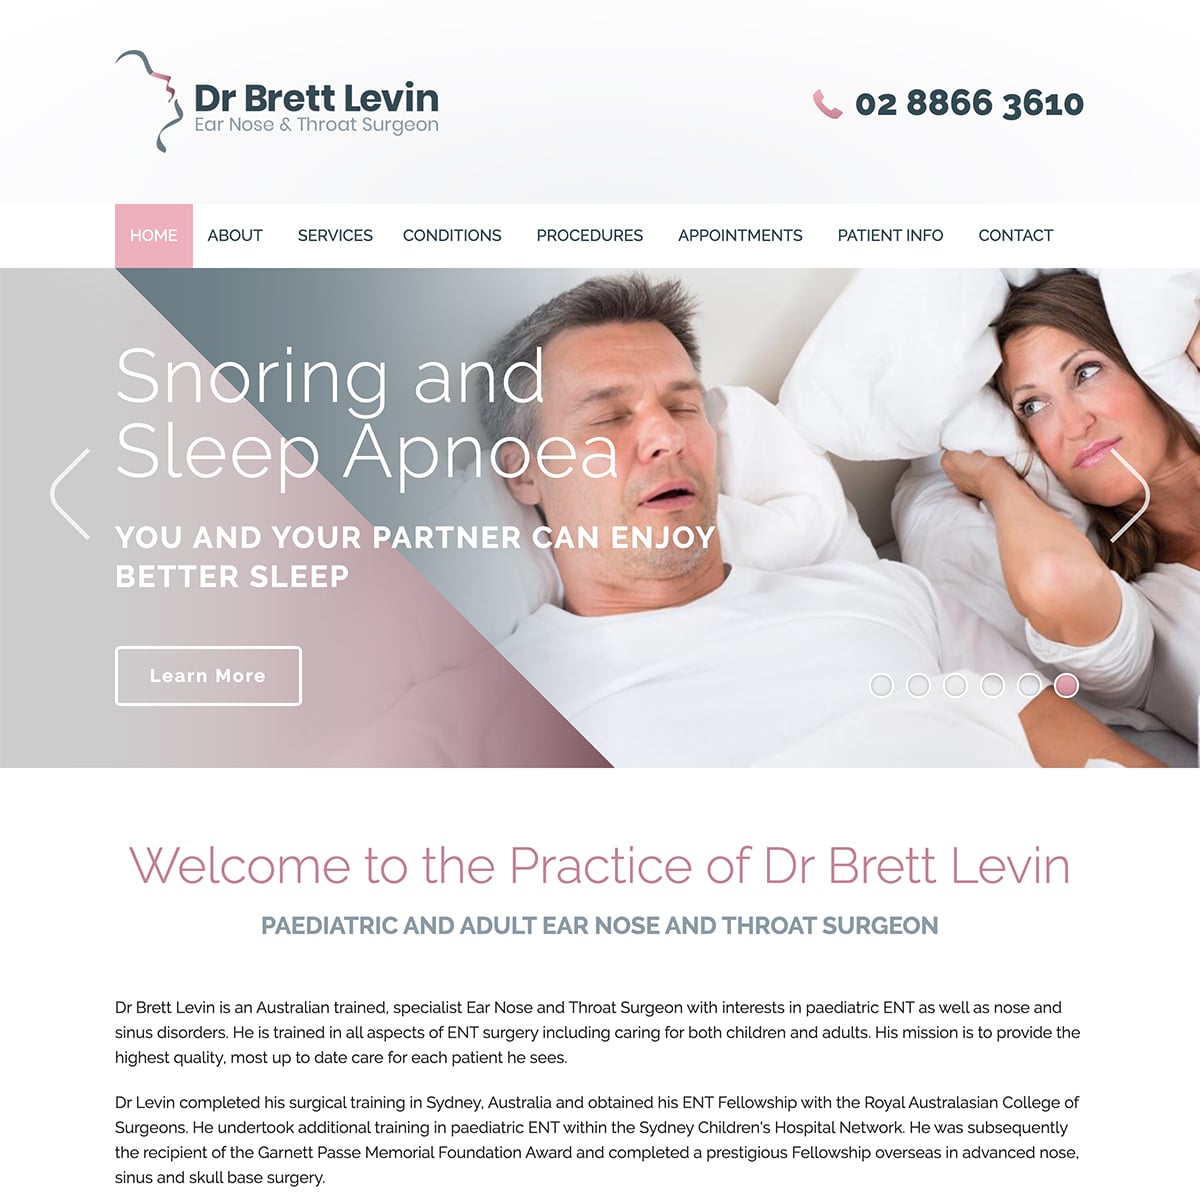 Dr Brett Levin - Homepage Slide 3